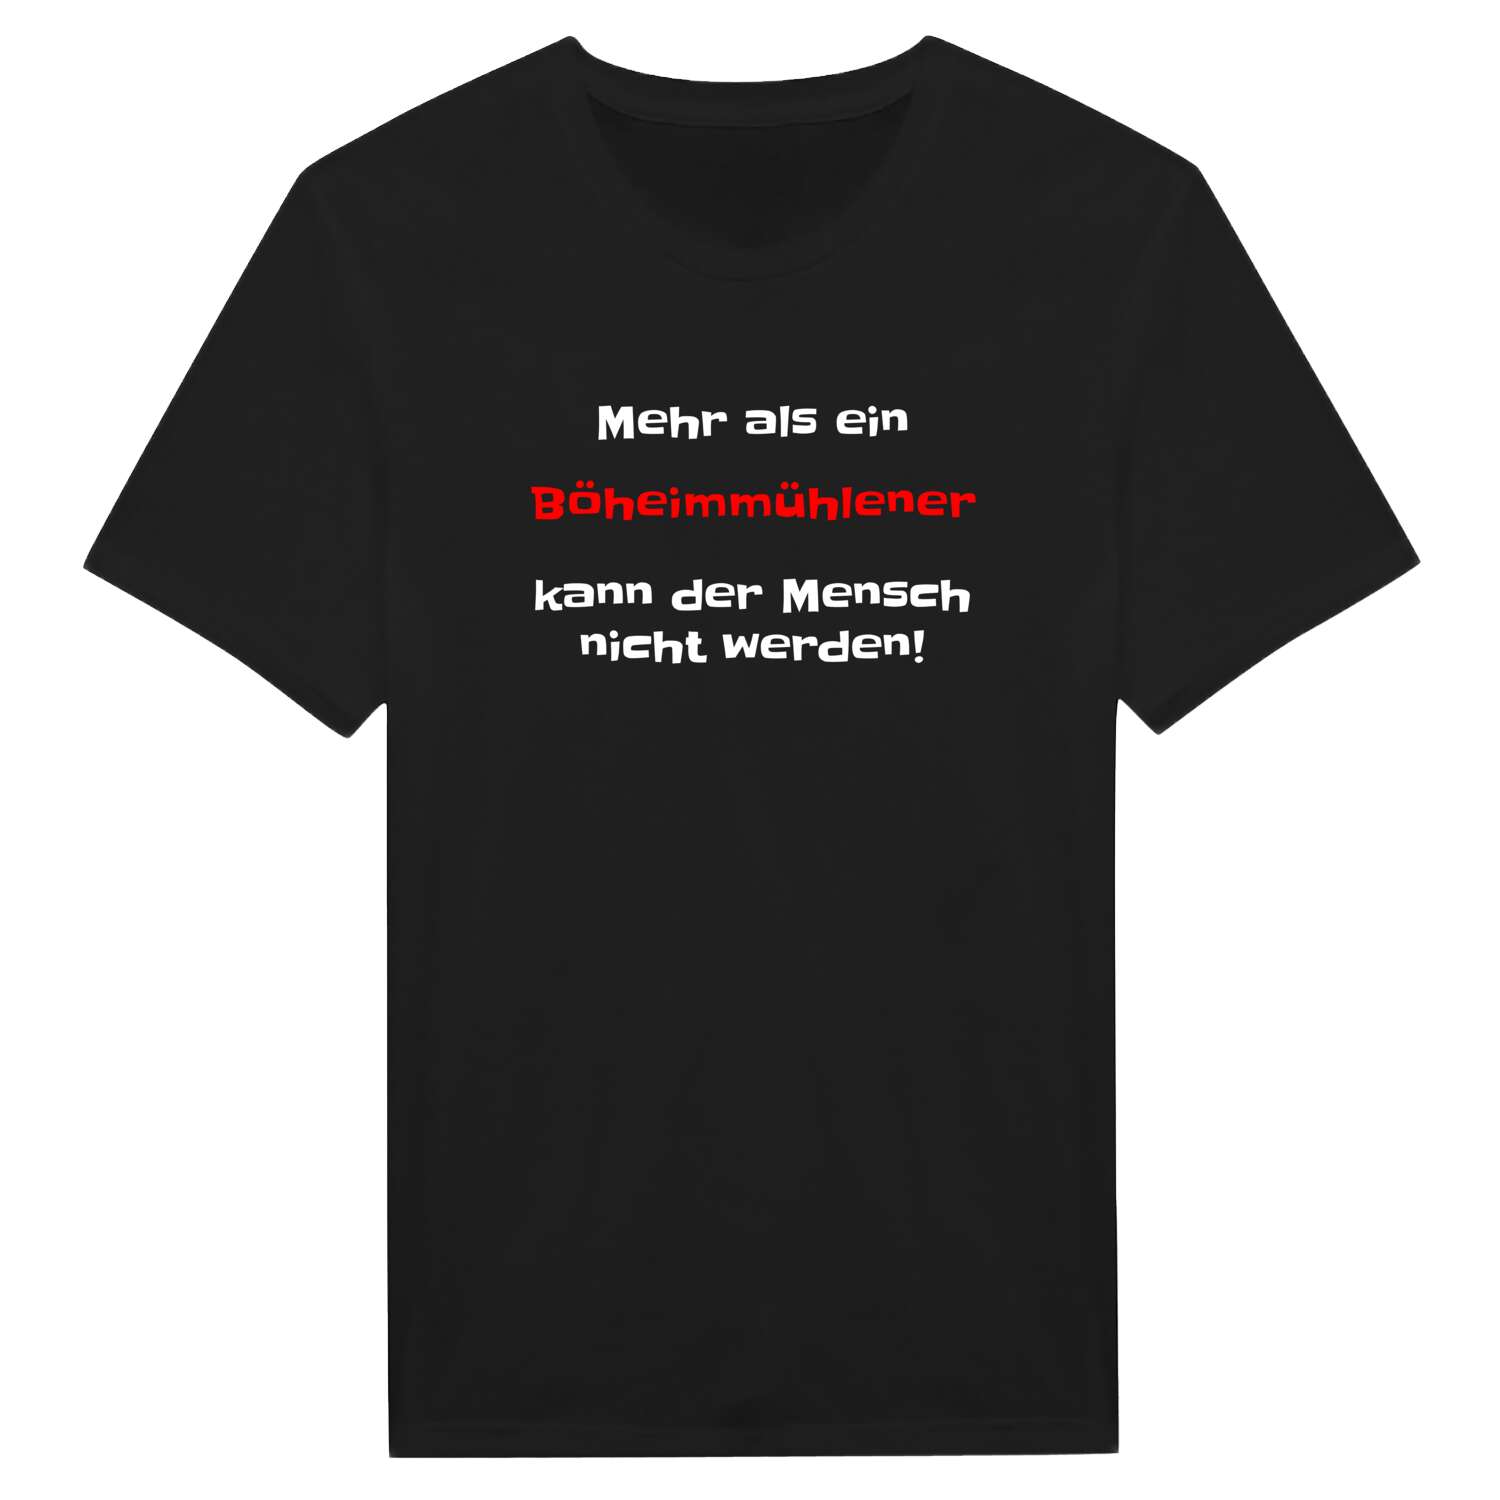 Böheimmühle T-Shirt »Mehr als ein«